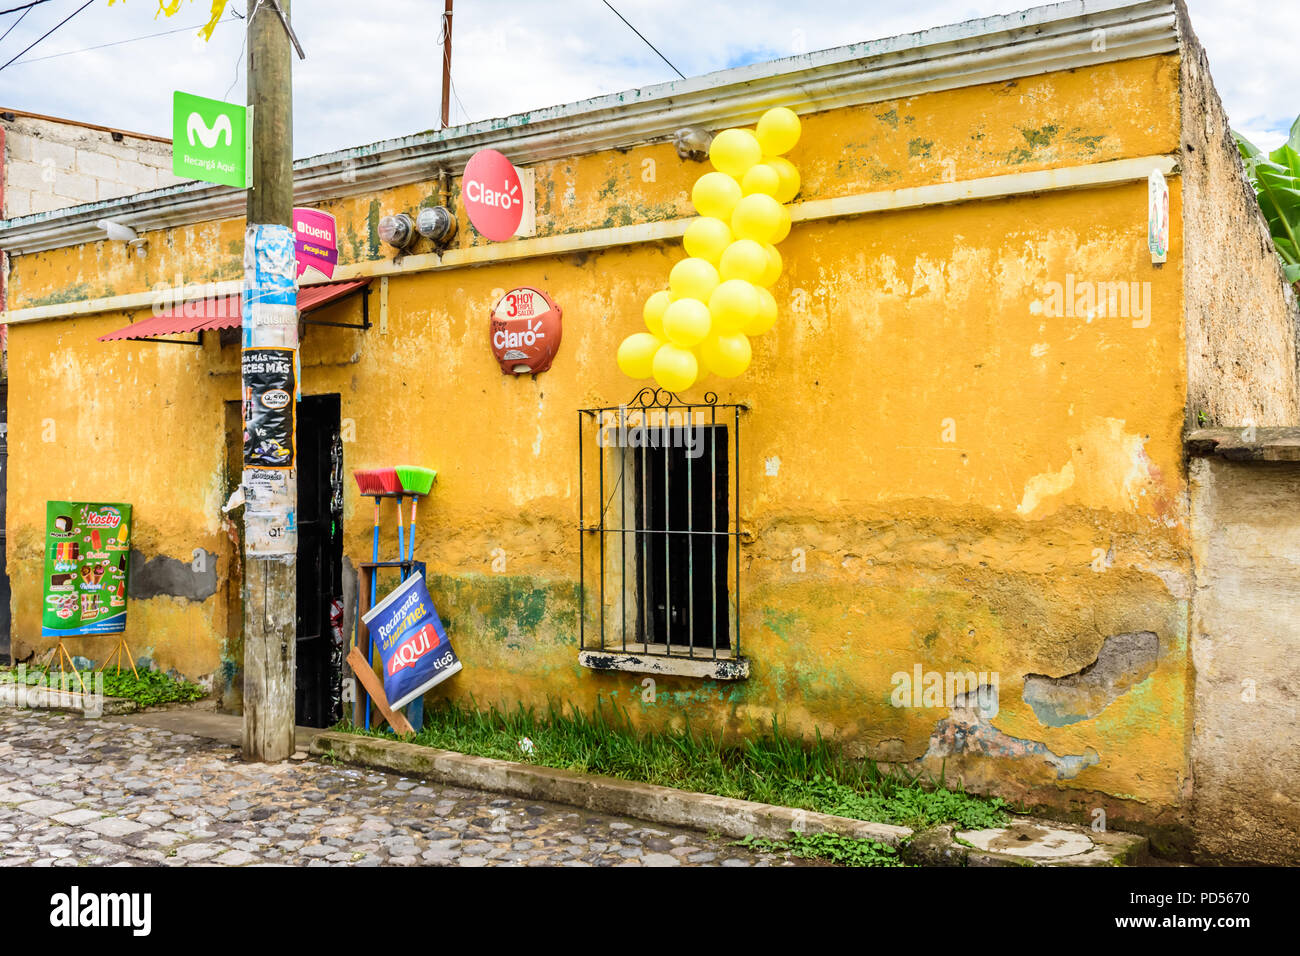 San Juan del Obispo, Guatemala - 24. Juni 2018: Die lokalen Speicher für Corpus Christi in der Nähe der UNESCO-Weltkulturerbe von Antigua eingerichtet. Stockfoto